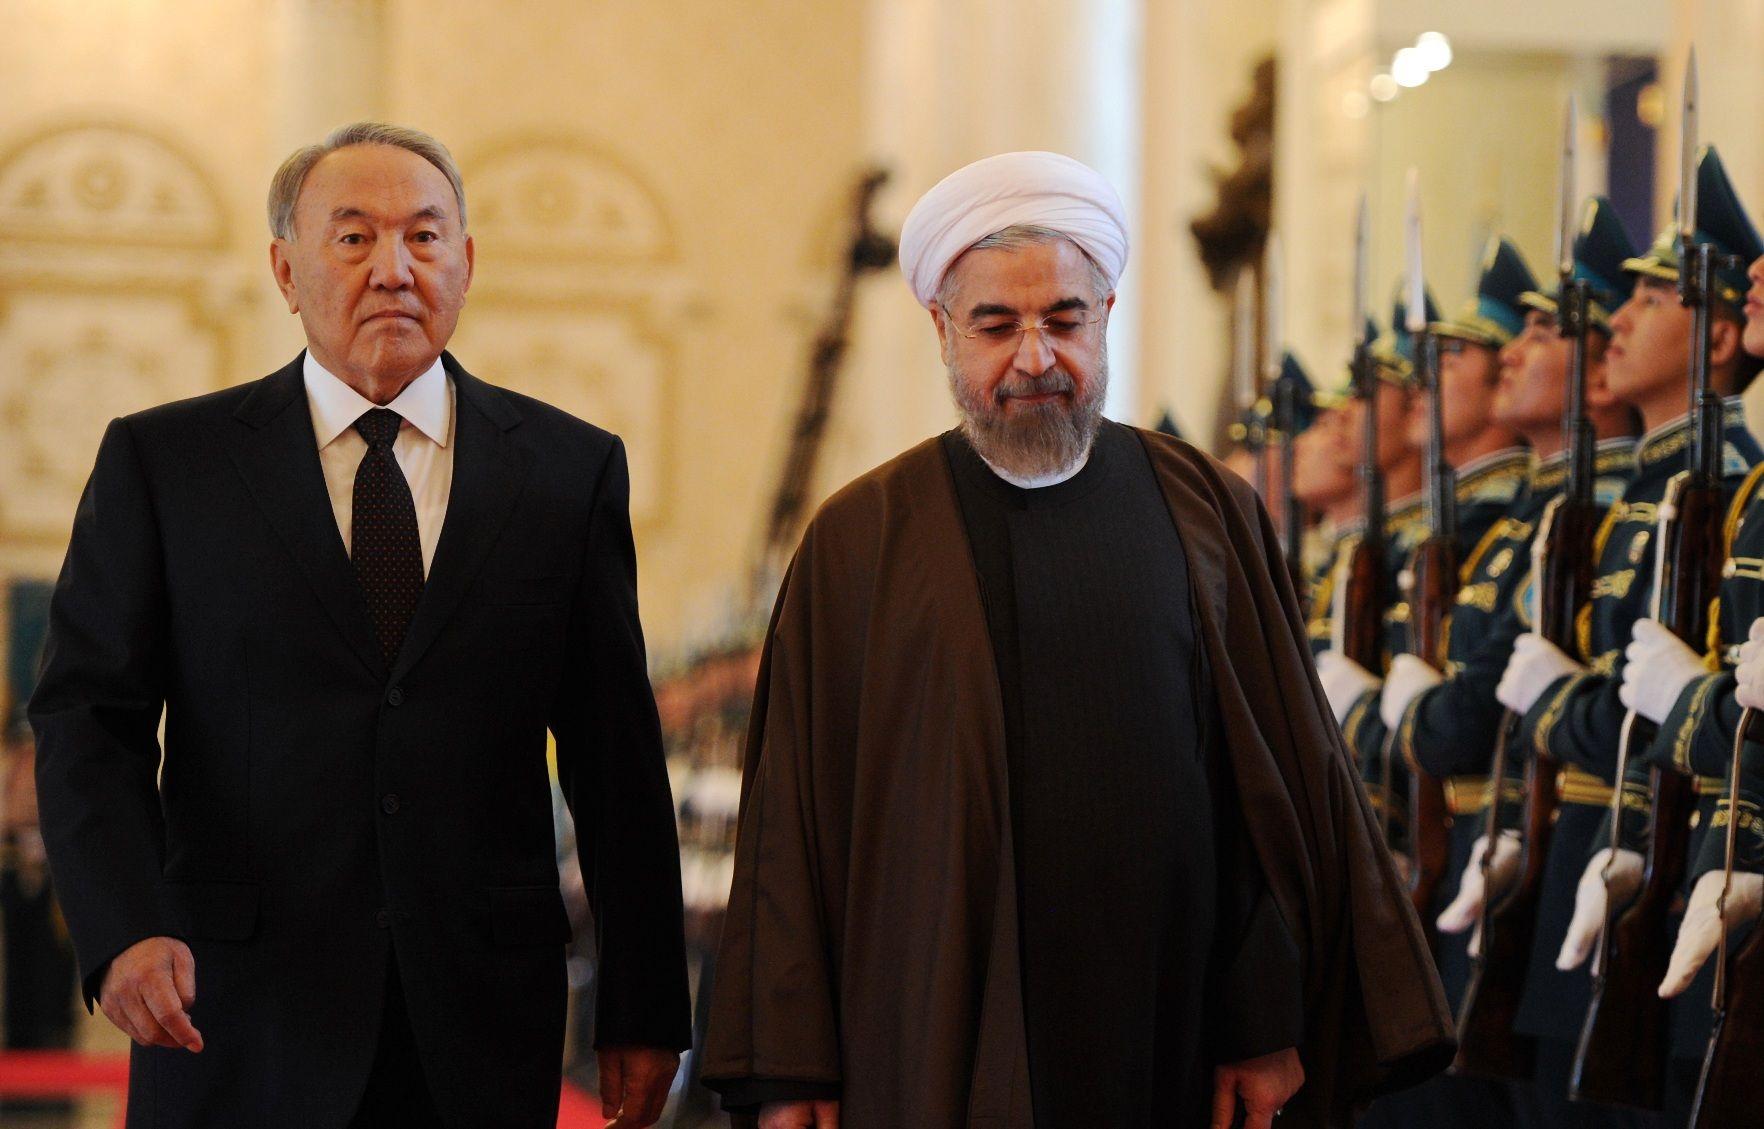 Зачем Казахстану посредничество по иранской ядерной программе